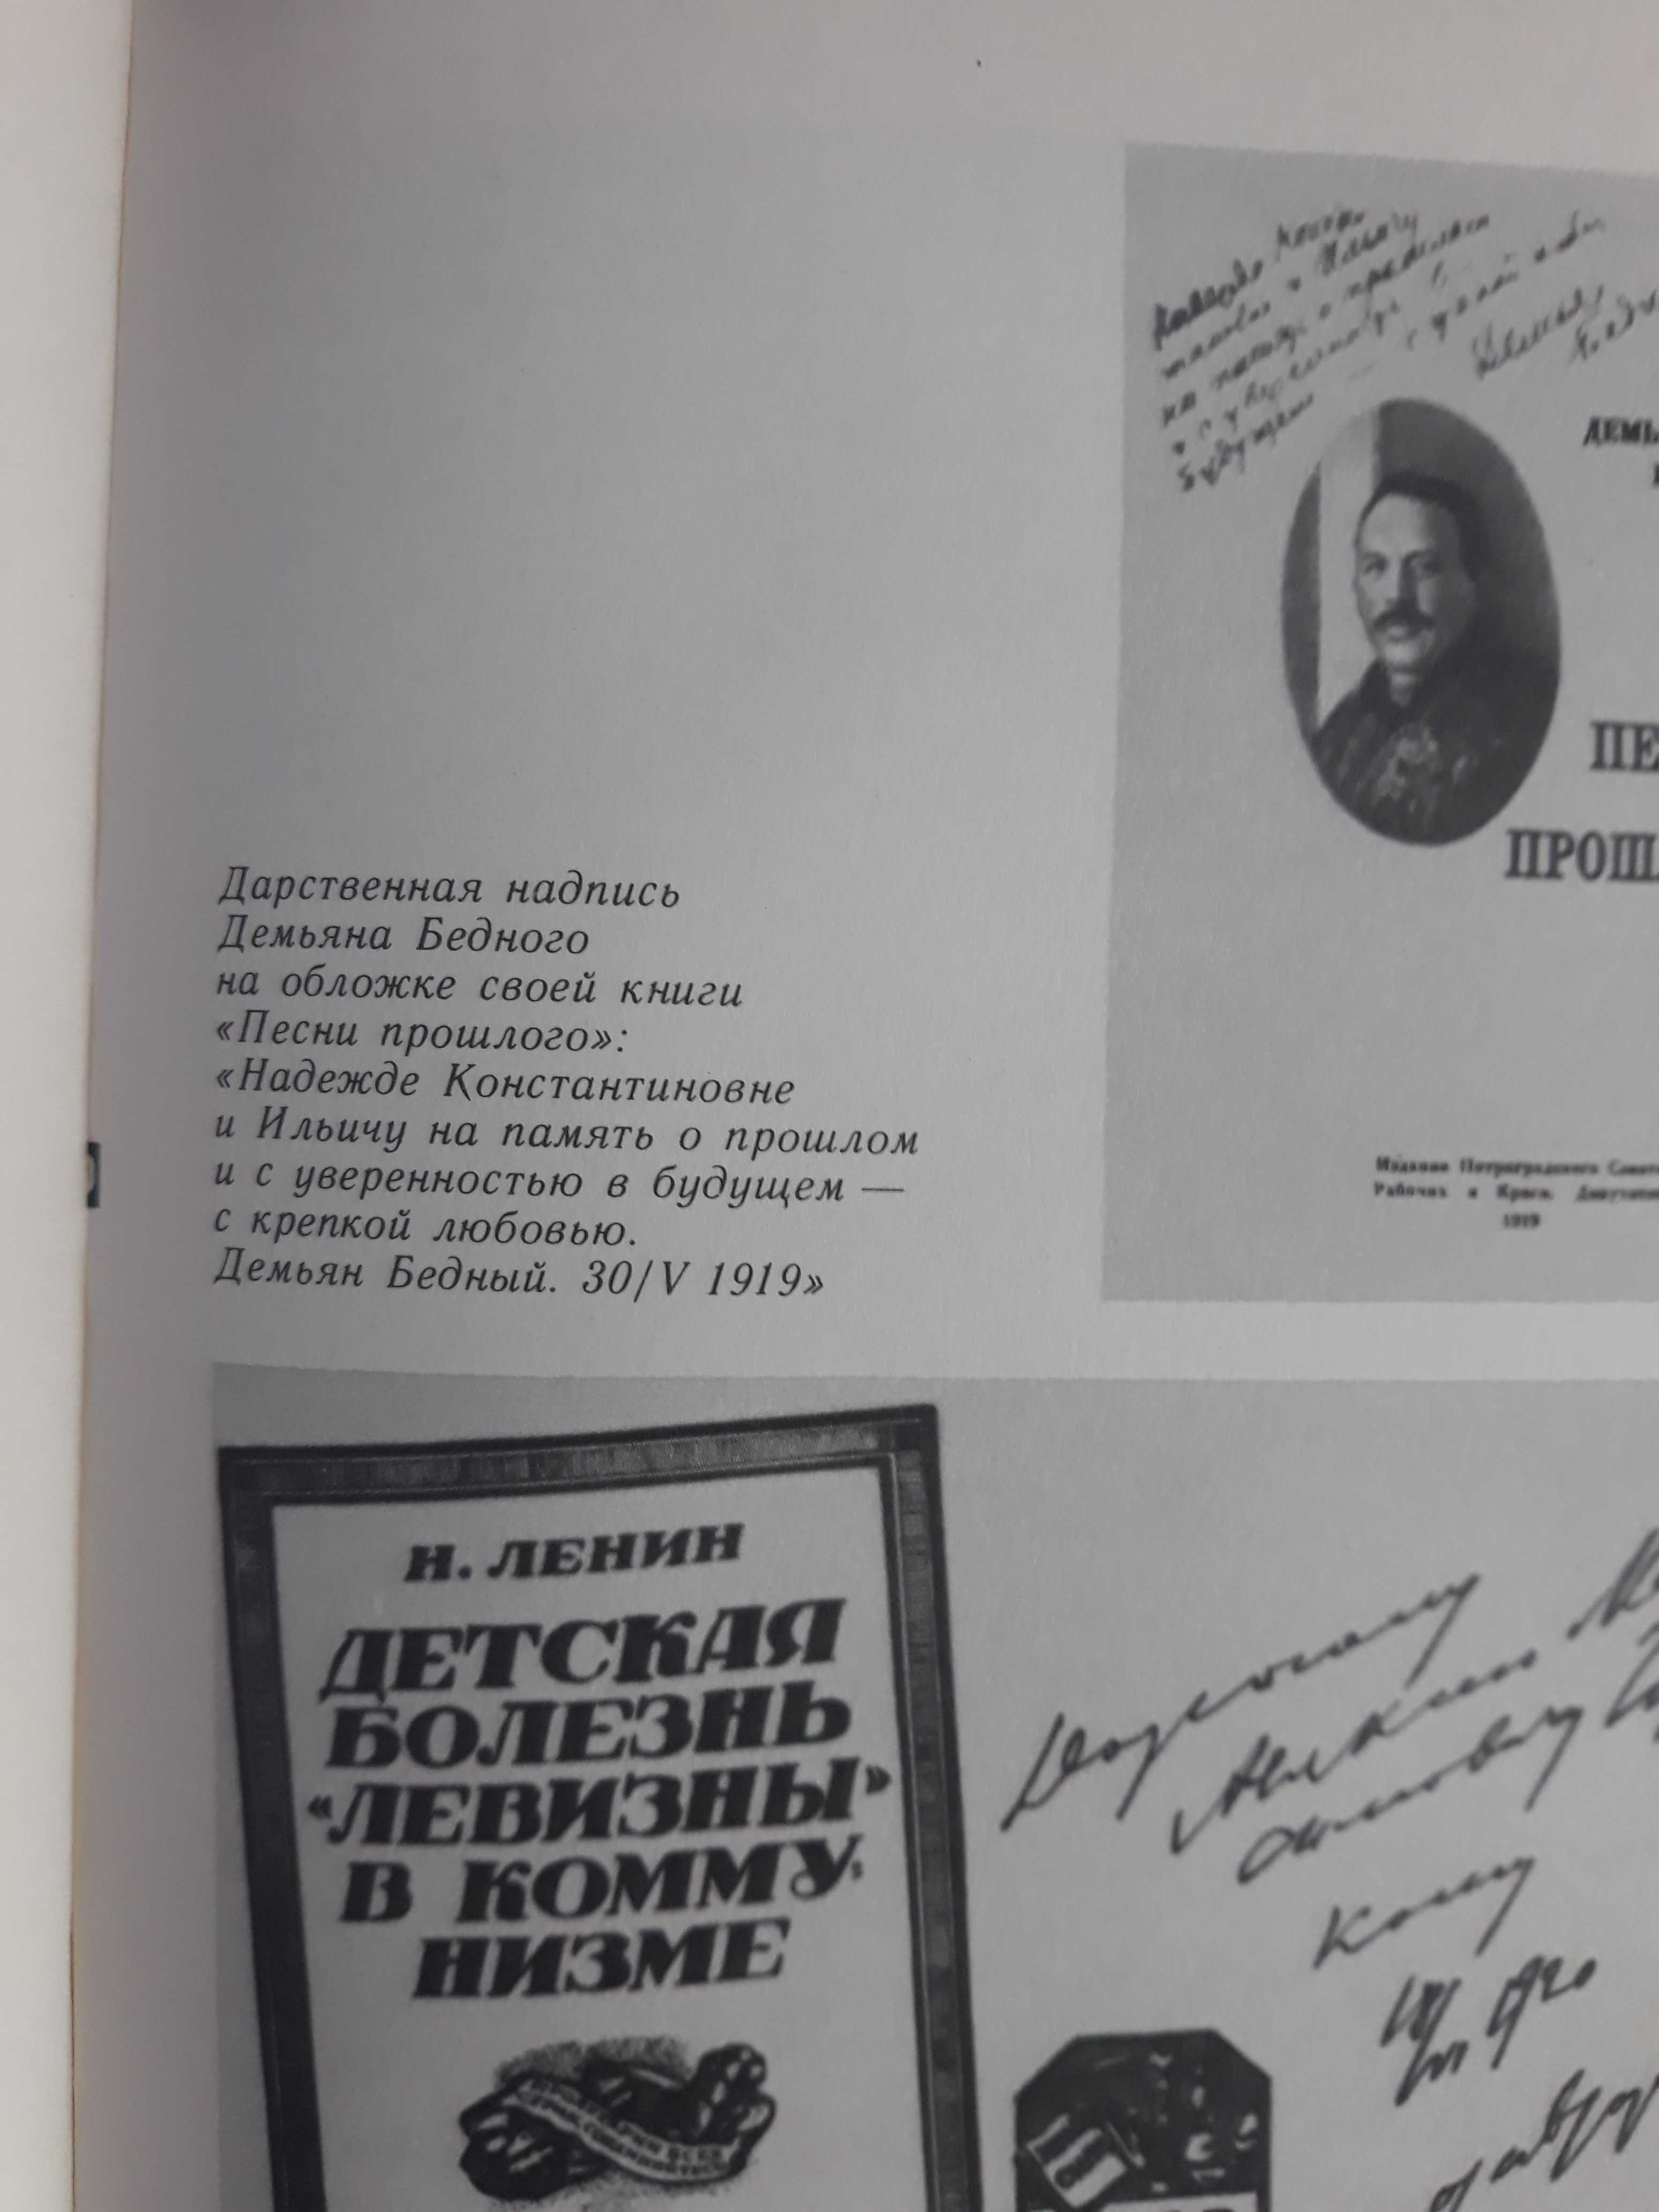 Продам книгу "Ленин и книга". Составитель Окороков.